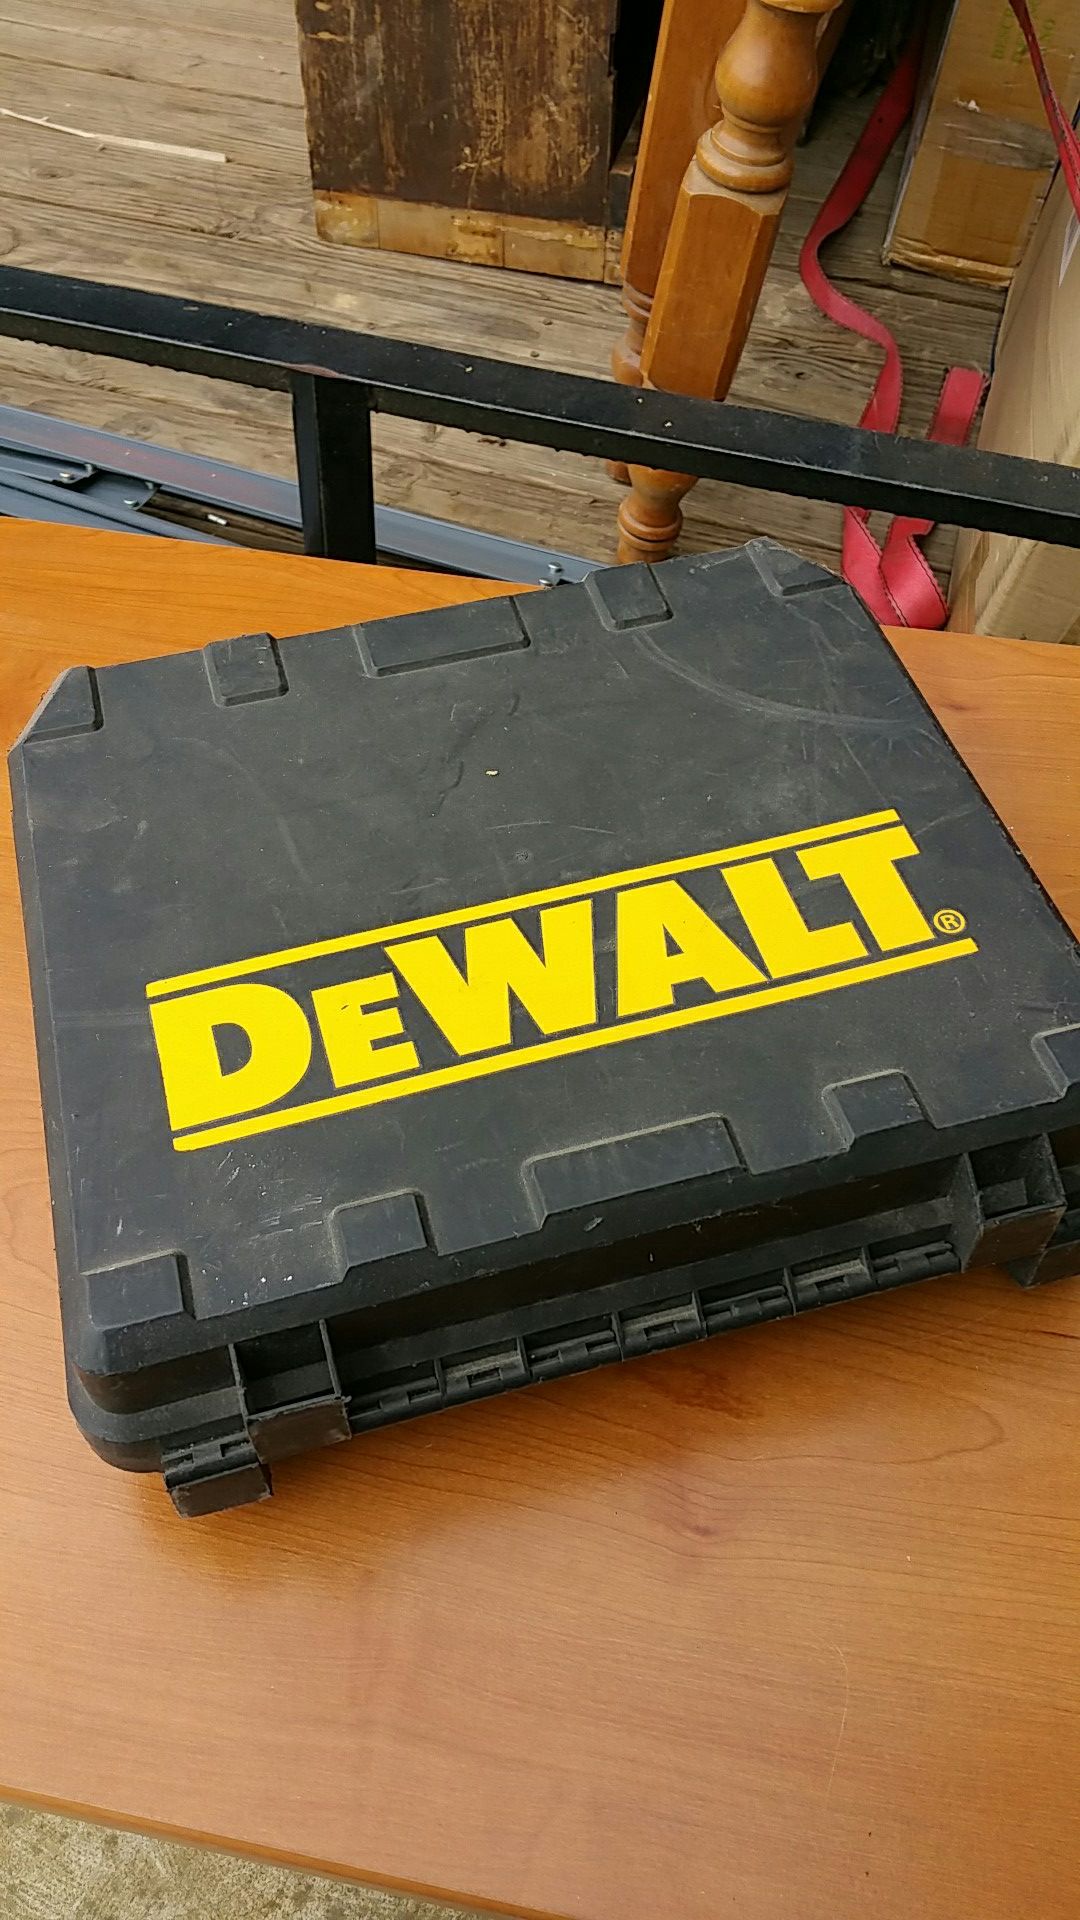 DeWalt case